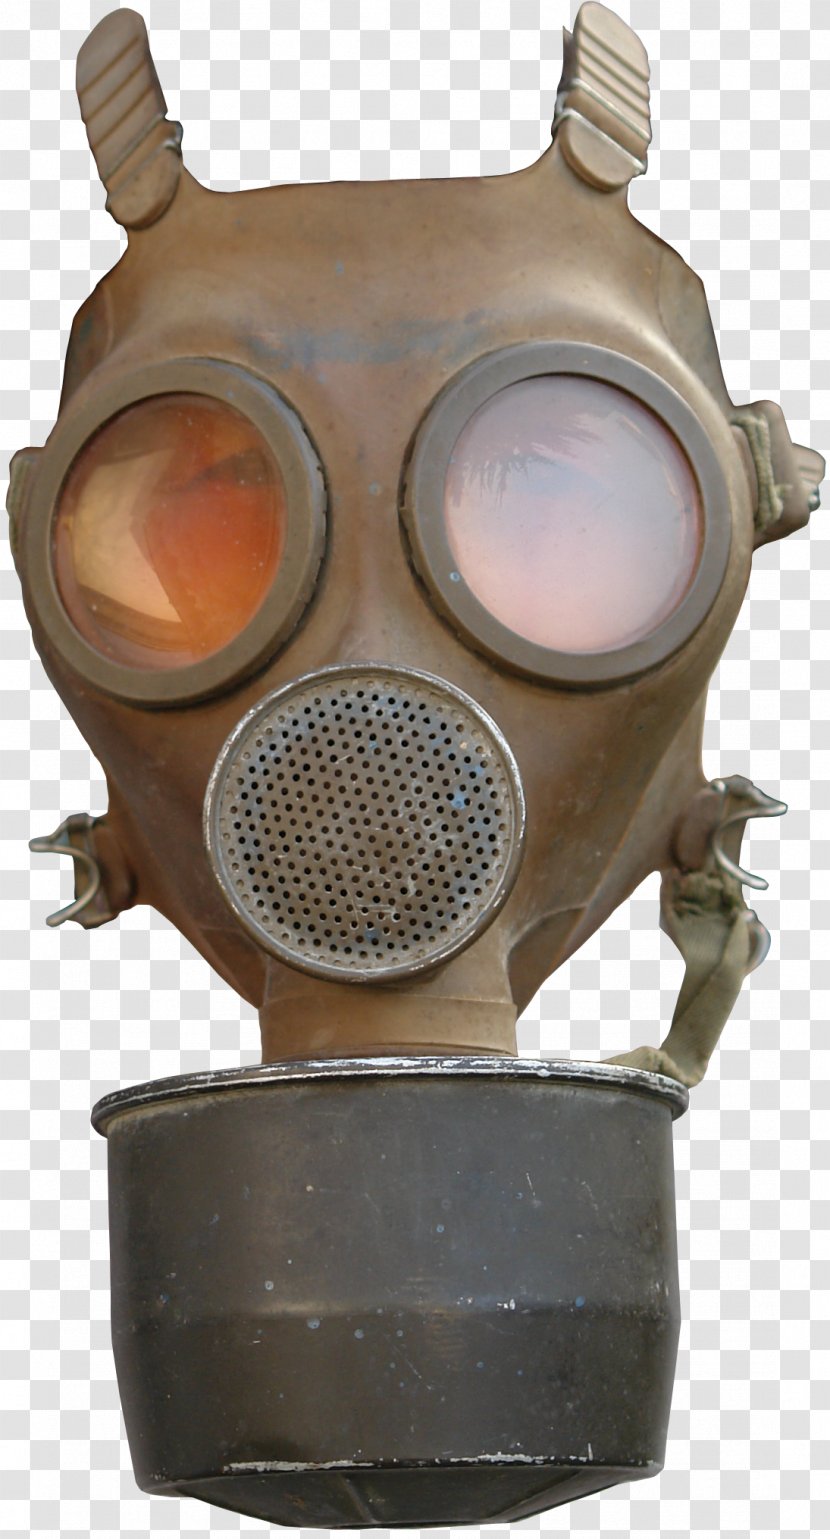 Gas Mask Image File Formats - Front Masks Transparent PNG